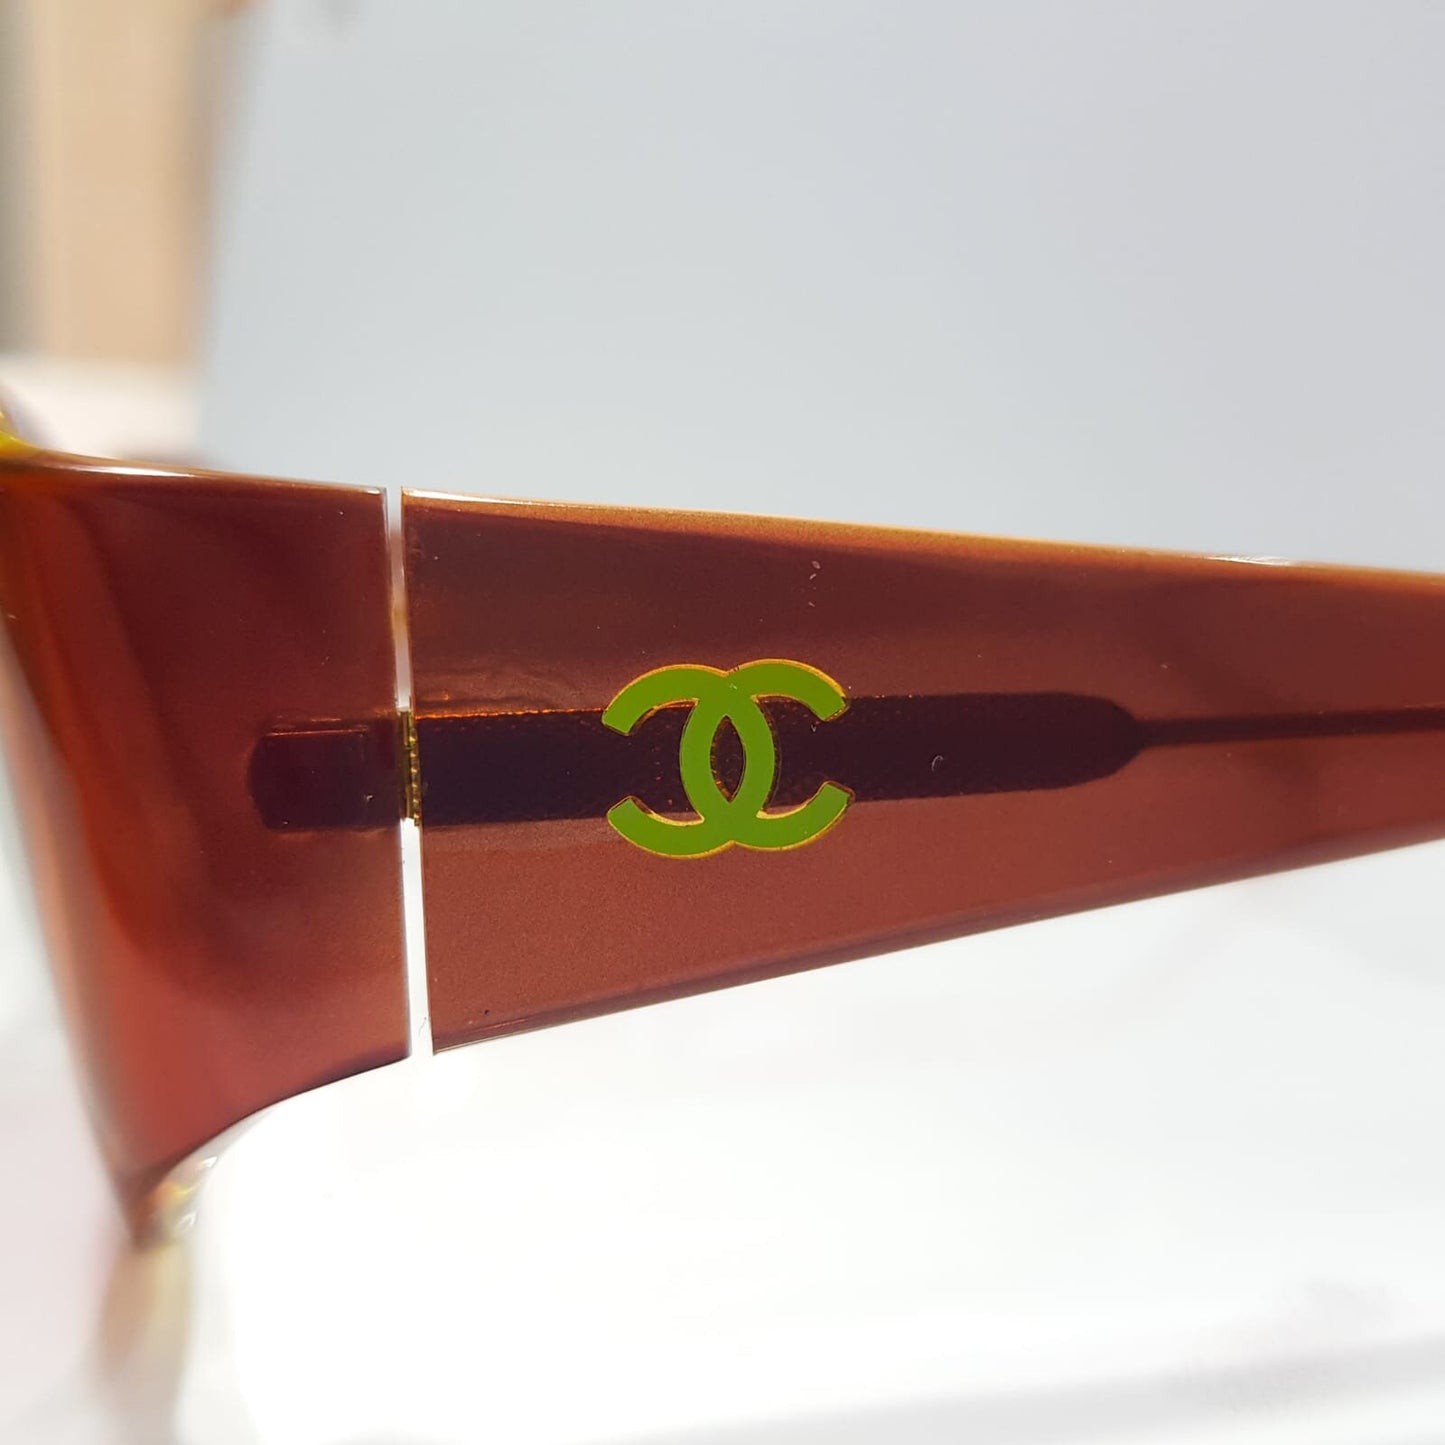 Chanel occhiali da sole vintage occhiali gafas 90s made in italy o